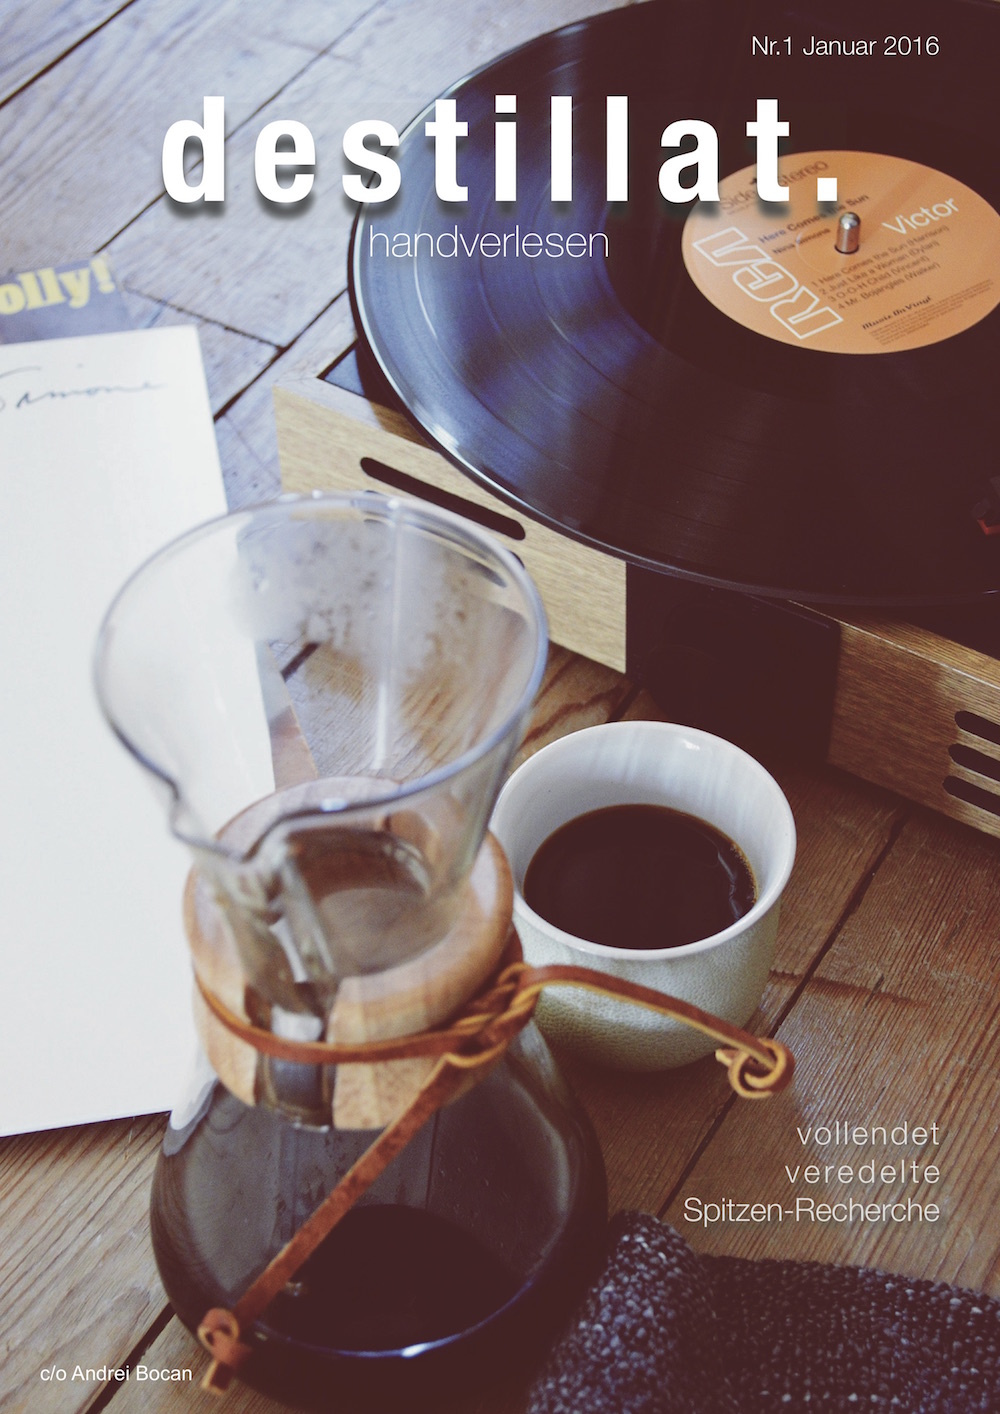 Cover des Magazins "Destillat", darauf zu sehen eine Kaffeekanne und eine Schallplatte